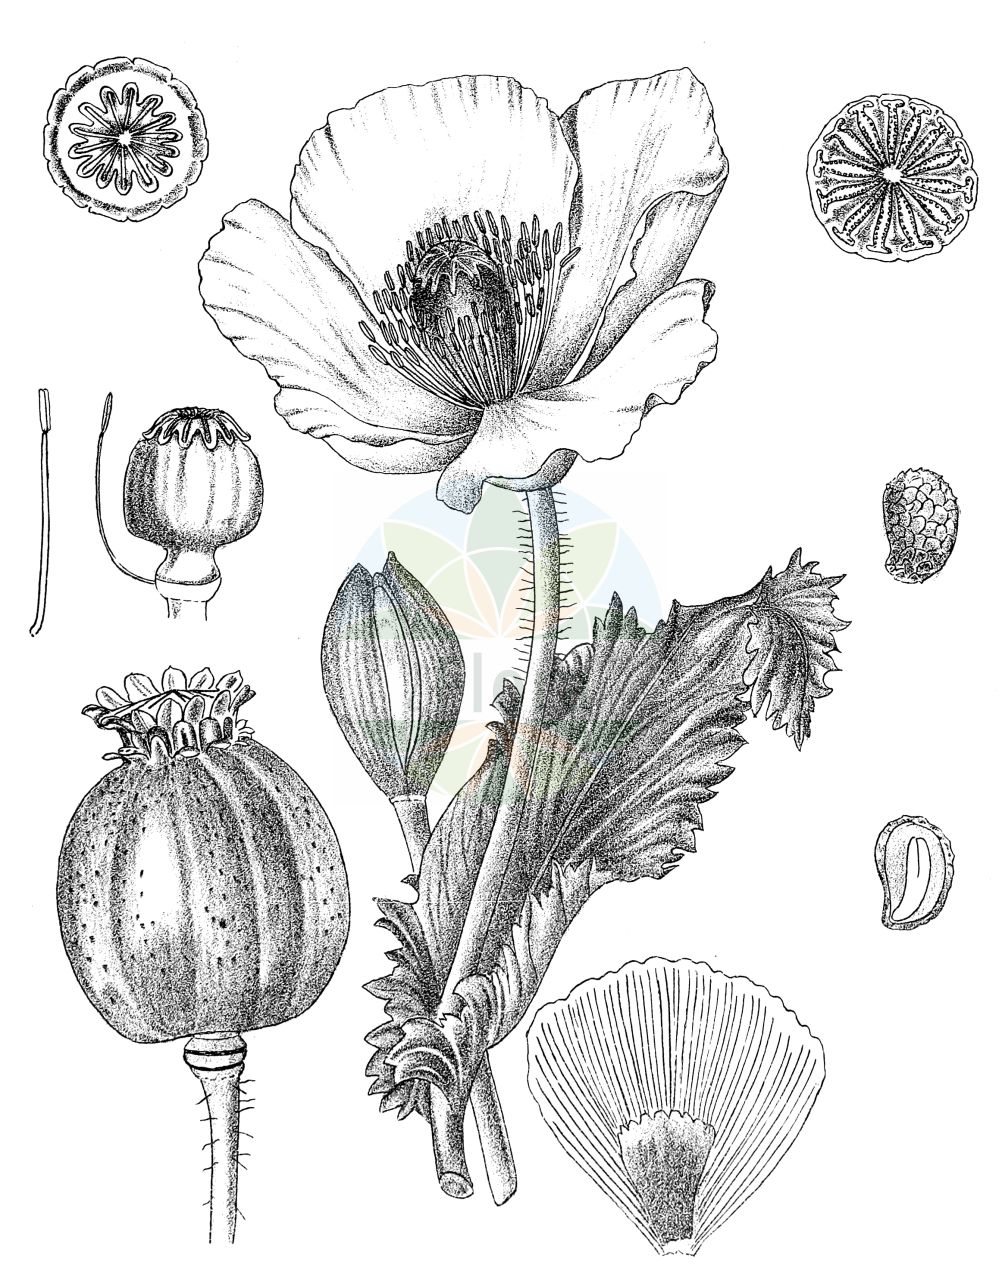 Historische Abbildung von Papaver somniferum (Schlaf-Mohn - Opium Poppy). Das Bild zeigt Blatt, Bluete, Frucht und Same. ---- Historical Drawing of Papaver somniferum (Schlaf-Mohn - Opium Poppy). The image is showing leaf, flower, fruit and seed.(Papaver somniferum,Schlaf-Mohn,Opium Poppy,Papaver album,Papaver hortense,Papaver officinale,Papaver somniferum,Papaver somniferum subsp. nigrum,Schlaf-Mohn,Opium Poppy,Papaver,Mohn,Poppy,Papaveraceae,Mohngewächse,Poppy family,Blatt,Bluete,Frucht,Same,leaf,flower,fruit,seed,Kirtikar & Basu (1918))